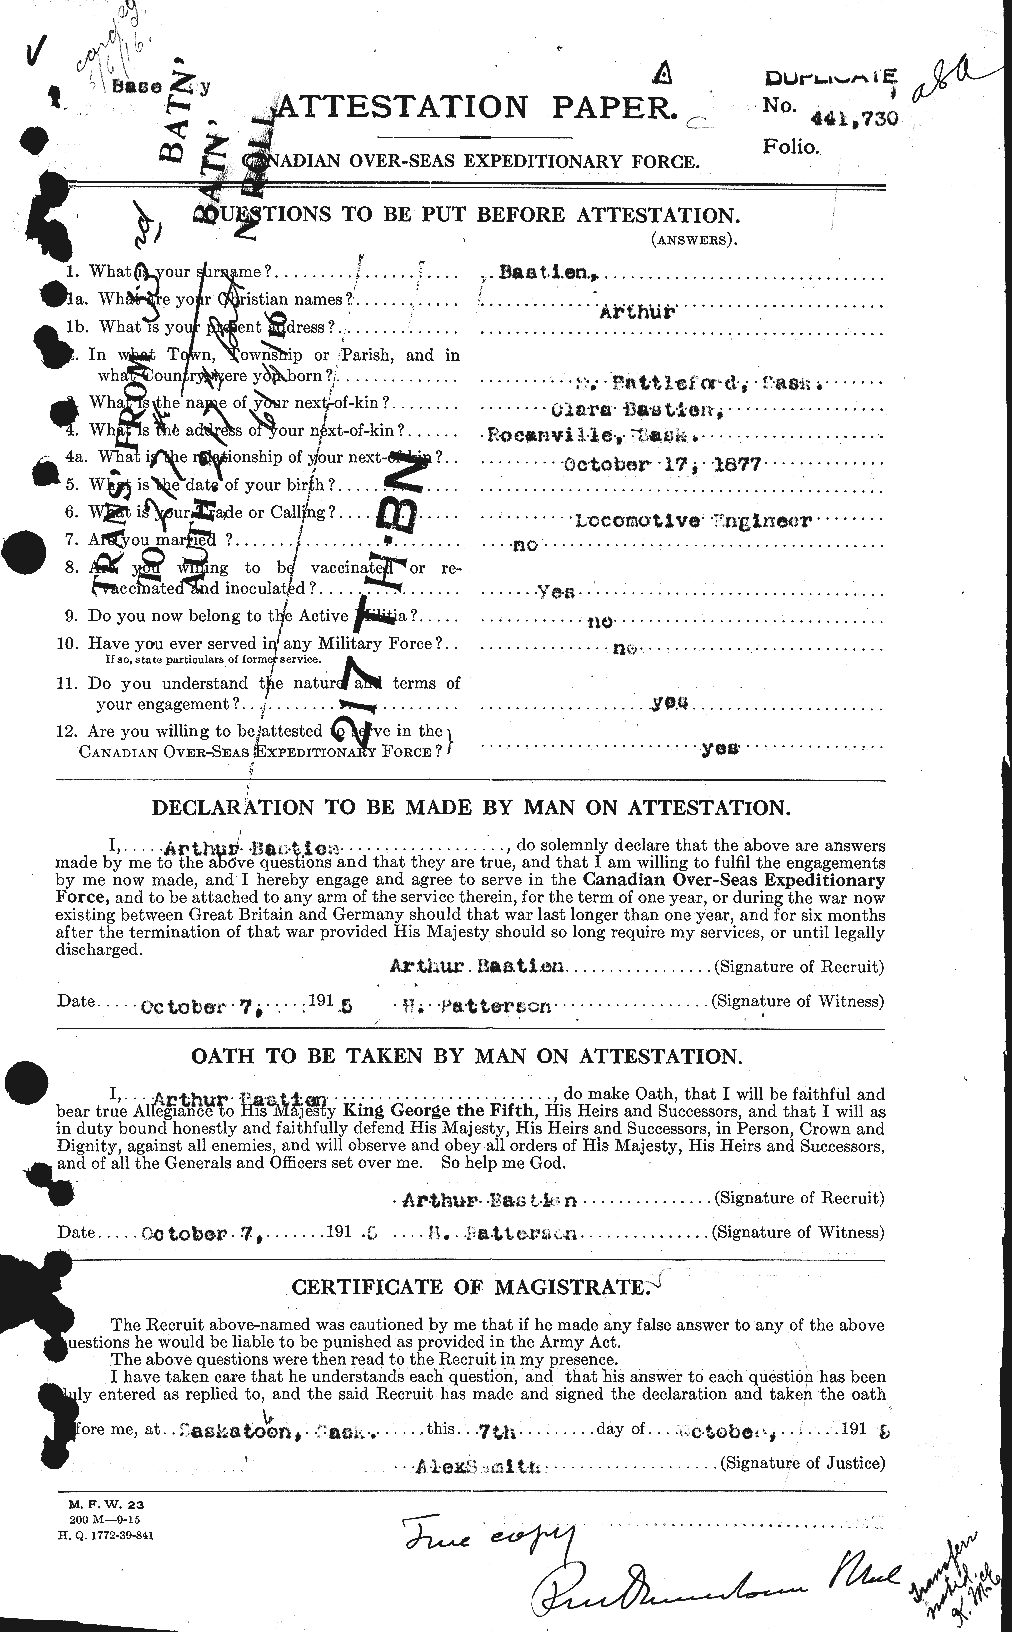 Dossiers du Personnel de la Première Guerre mondiale - CEC 228246a